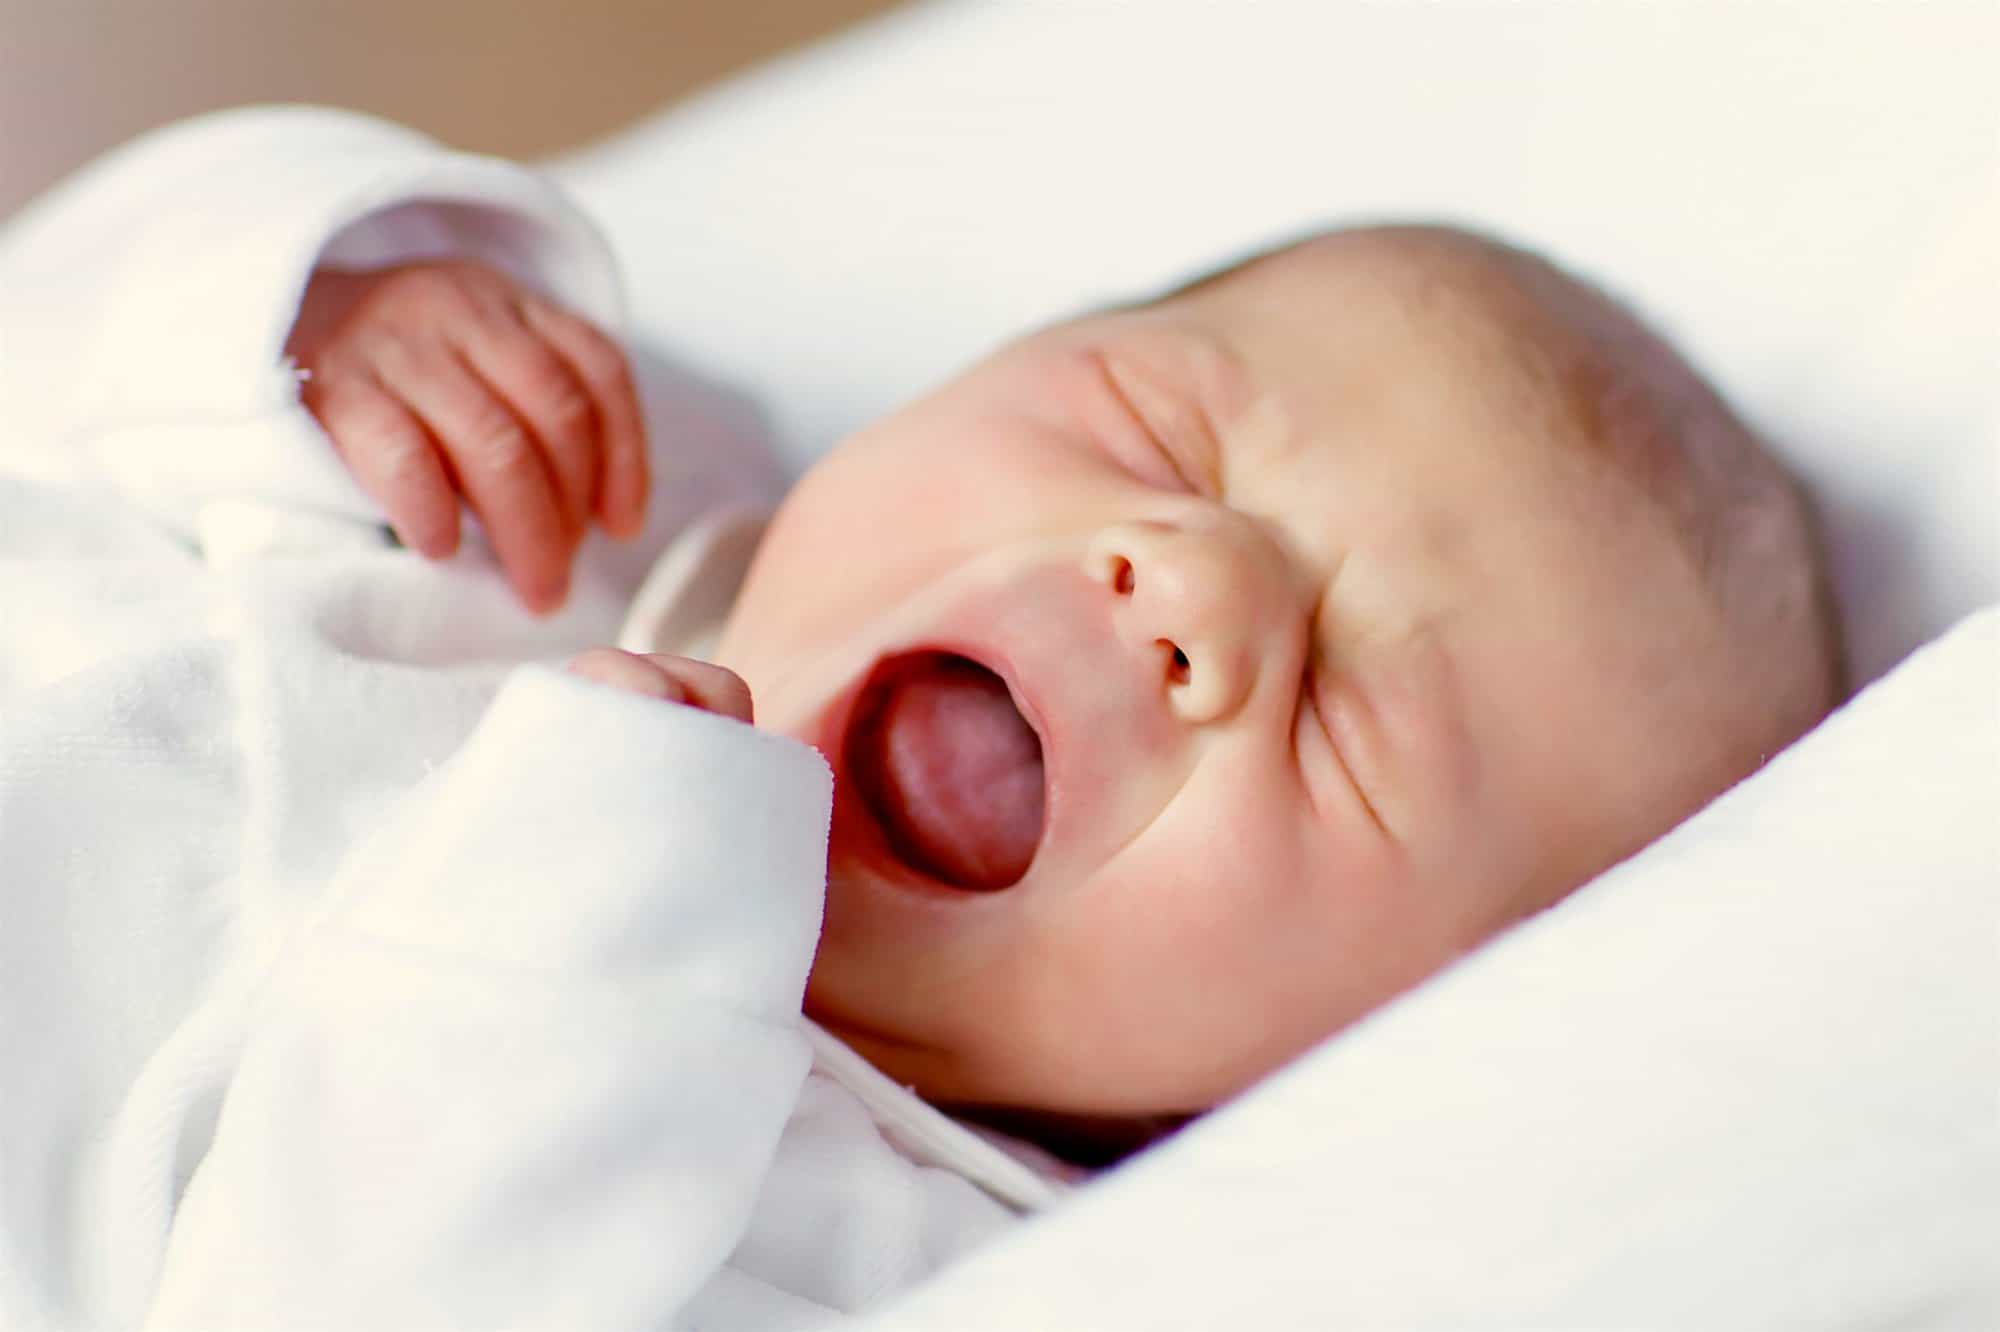 Nariz tapada en bebé recién nacido: Obstrucción nasal